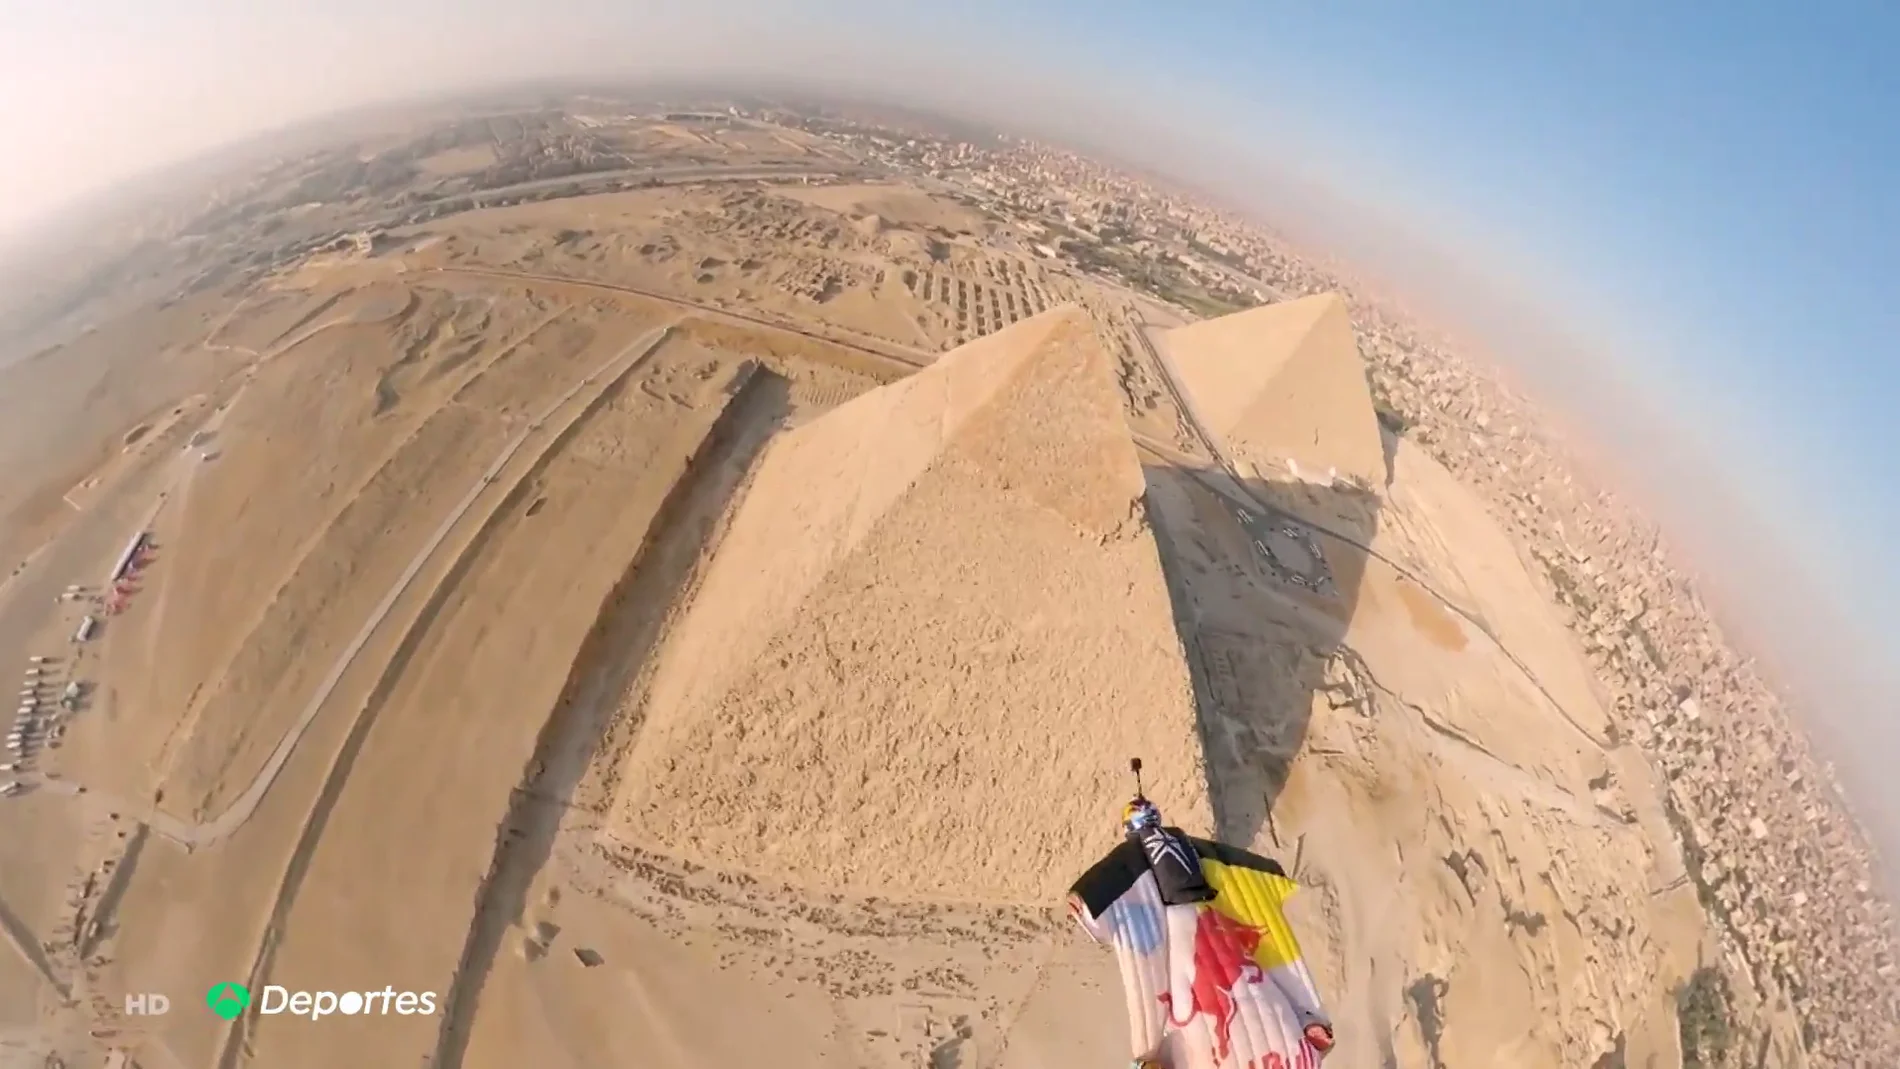 El impresionante vuelo de 'wingsuit' rozando las pirámides de Egipto